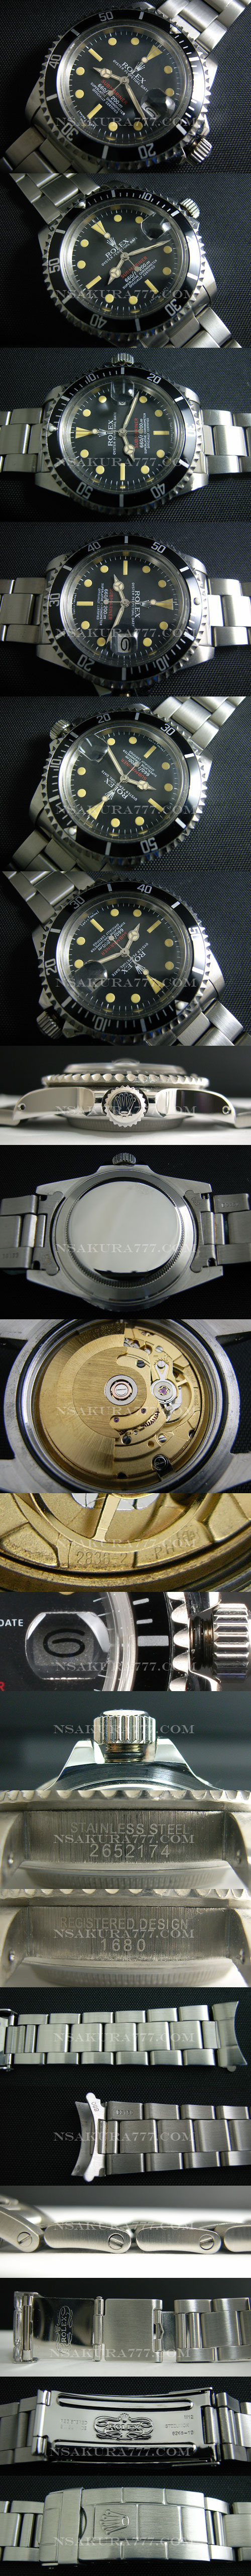 レプリカ時計 ロレックスサブマリーナ 旧型サブ廉価版2836-2ムーブ搭載 - ウインドウを閉じる